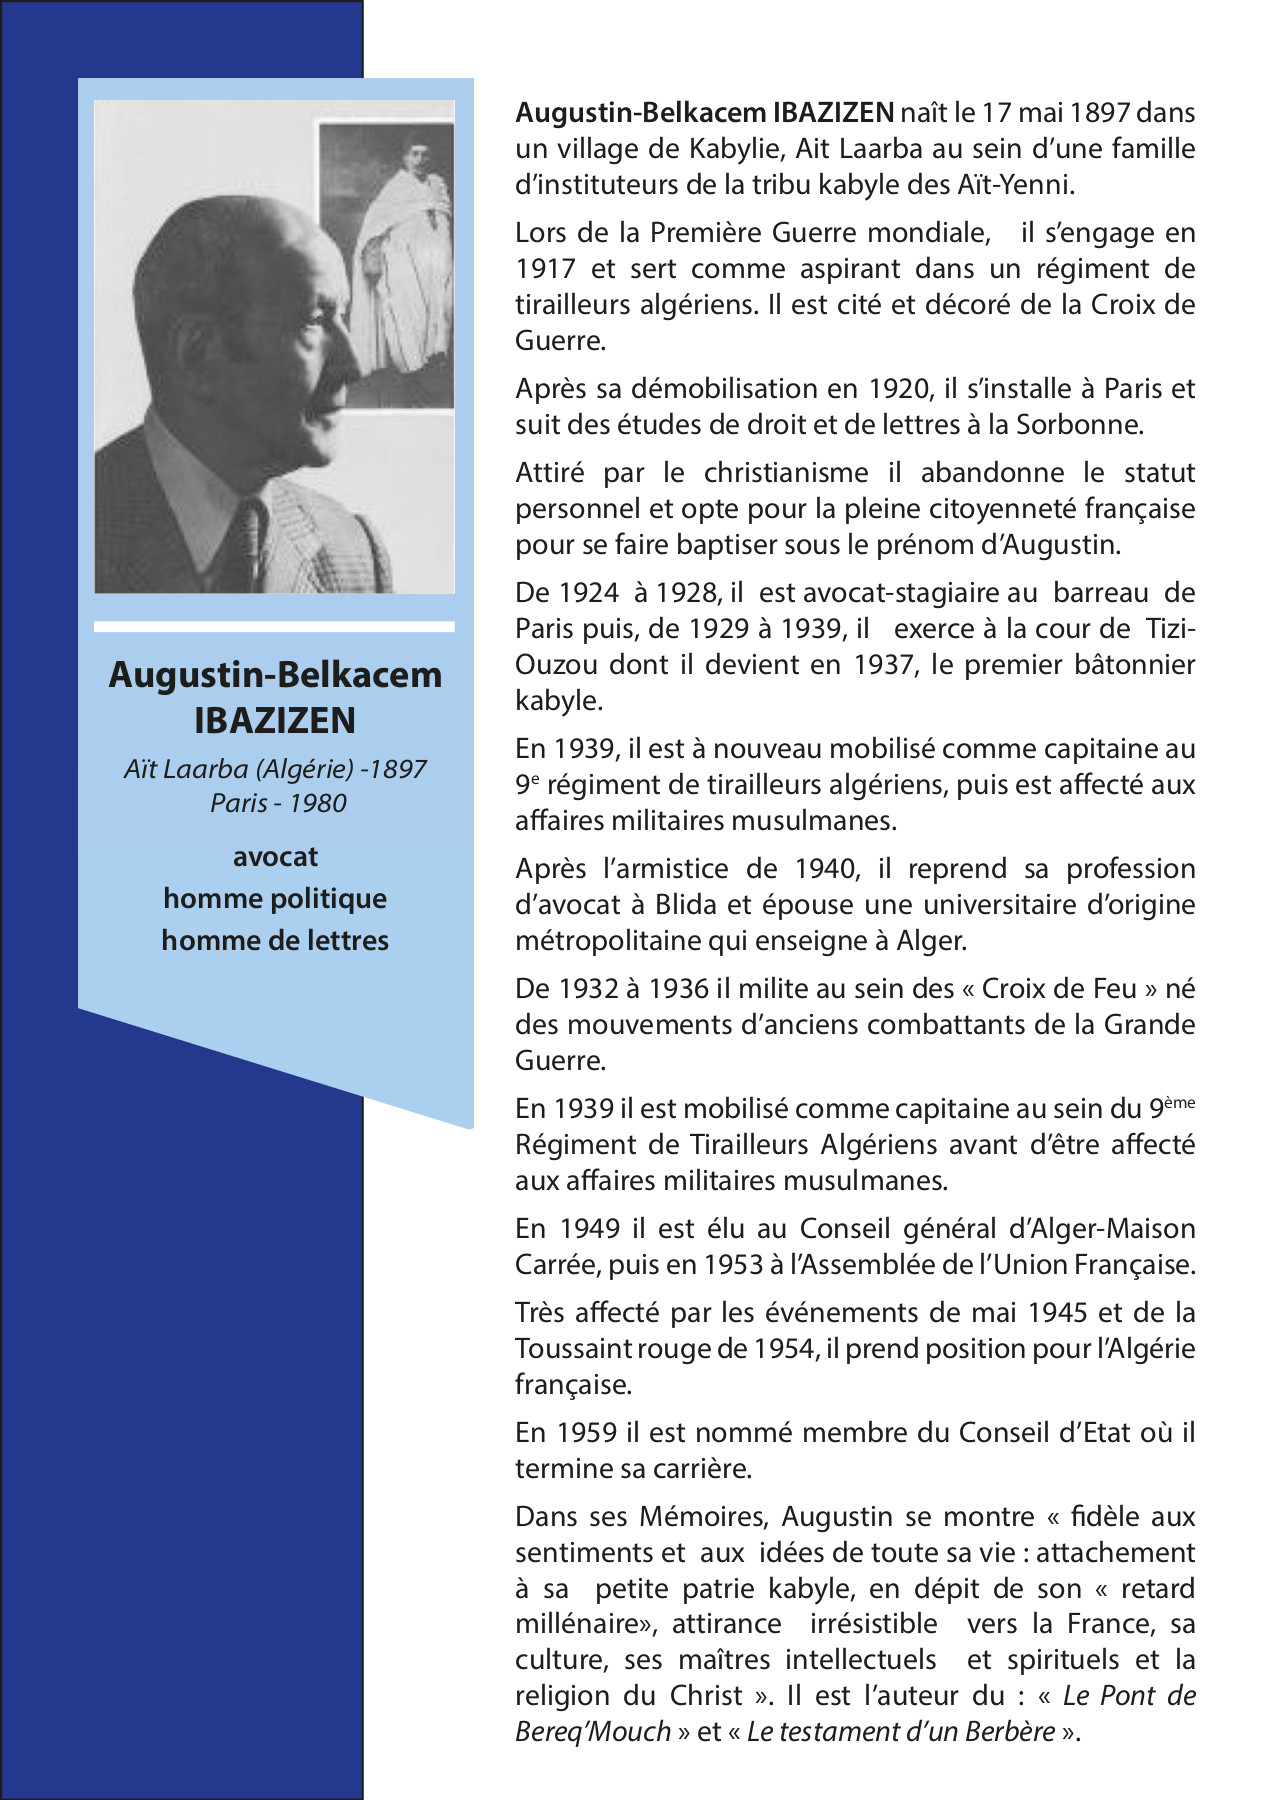 Augustin-Belkacem IBAZIZEN Aït  Laarba (Algérie) -1897 Paris - 1980  avocat homme politique homme de lettres.  Augustin-Belkacem IBAZIZEN naît le 17  mai 1897 dans un village de Kabylie, Ait  Laarba au sein d’une famille  d’instituteurs de la tribu kabyle des  Aït-Yenni. Lors de la Première Guerre  mondiale, il s’engage en 1917 et sert  comme aspirant dans un  régiment de tirailleurs algériens. Il  est cité et décoré de la Croix de  Guerre.  Après sa démobilisation en 1920, il  s’installe à Paris et suit des études de  droit et de lettres à la Sorbonne.  Attiré par le christianisme il abandonne  le statut personnel et opte pour la  pleine citoyenneté française pour se  faire baptiser sous le prénom  d’Augustin. De 1924 à 1928, il est  avocat-stagiaire au barreau de Paris  puis, de 1929 à 1939, il exerce à la  cour de Tizi-Ouzou dont il devient en  1937, le premier bâtonnier kabyle. En  1939, il est à nouveau mobilisé comme  capitaine au 9e régiment de tirailleurs  algériens, puis est affecté aux affaires  militaires musulmanes. Après l’armistice  de 1940, il reprend sa profession  d’avocat à Blida et épouse  une universitaire d’origine  métropolitaine qui enseigne à Alger.  De 1932 à 1936 il milite au sein des «  Croix de Feu » né des mouvements  d’anciens combattants de la Grande  Guerre. En 1939 il est mobilisé comme  capitaine au sein du 9ème Régiment de  Tirailleurs  Algériens avant d’être affecté aux  affaires militaires musulmanes. En 1949  il est élu au Conseil général  d’Alger-Maison Carrée, puis en 1953 à  l’Assemblée de l’Union Française. Très  affecté par les événements de mai 1945  et de la Toussaint rouge de 1954, il  prend position pour l’Algérie française.  En 1959 il est nommé membre du Conseil  d’Etat où il termine sa carrière.  Dans ses Mémoires, Augustin se montre «  fidèle aux sentiments et aux idées de  toute sa vie : attachement à sa petite  patrie kabyle, en dépit de son « retard  millénaire»,  attirance irrésistible vers la France,  sa culture, ses maîtres intellectuels et  spirituels et la religion du Christ ».  Il est l’auteur du : « Le Pont de  Bereq’Mouch » et « Le testament d’un  Berbère ».